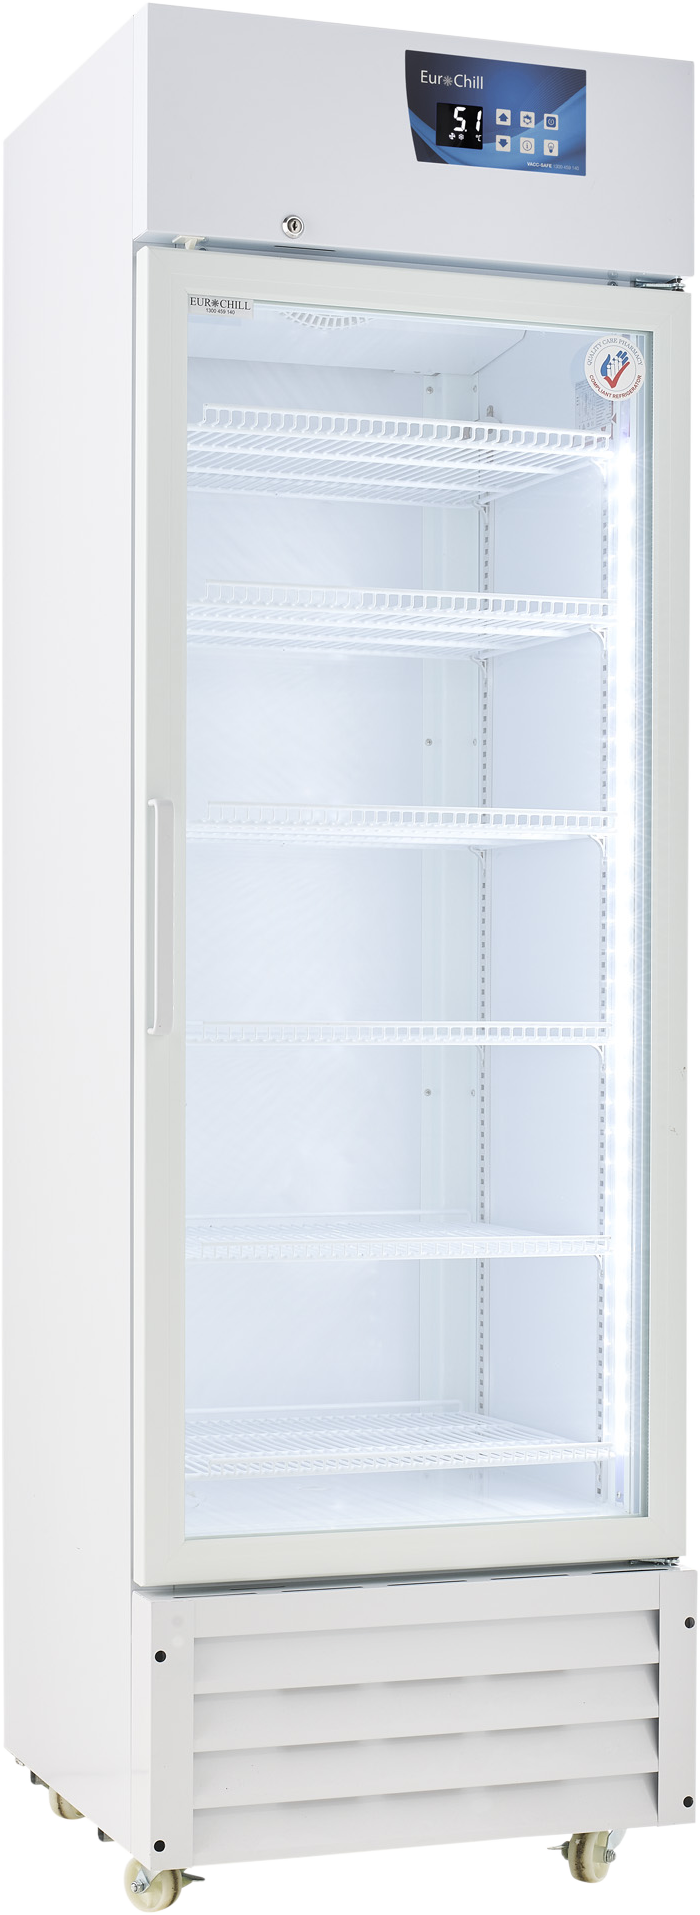 Vacc-Safe 400 Premium Vaccine Refrigerator